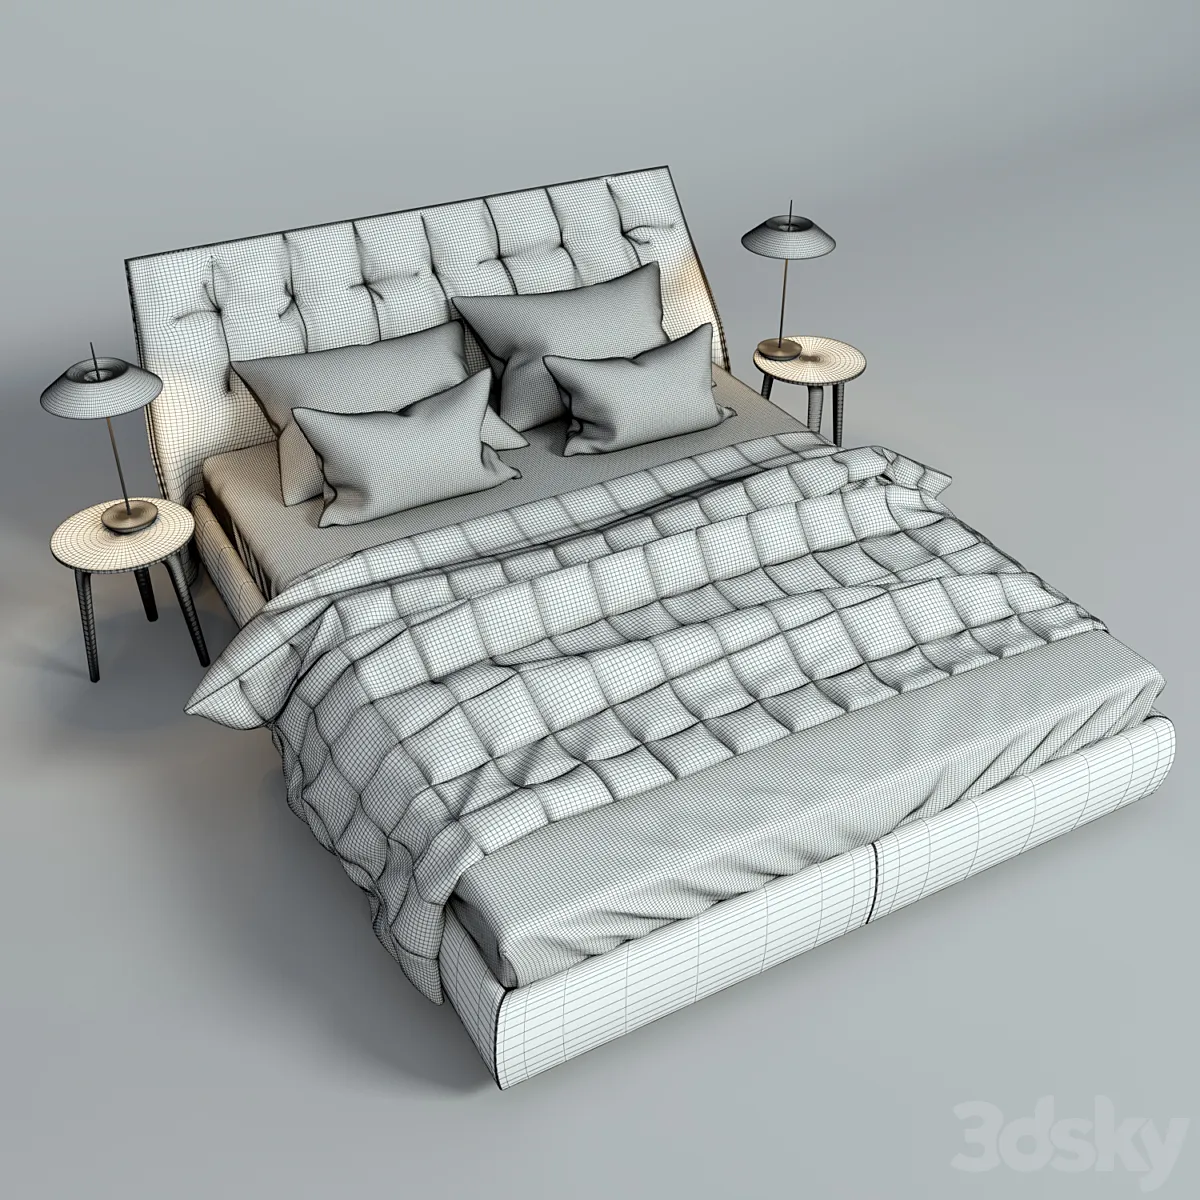 مدل سه بعدی تخت خواب مدرن 22 - 6